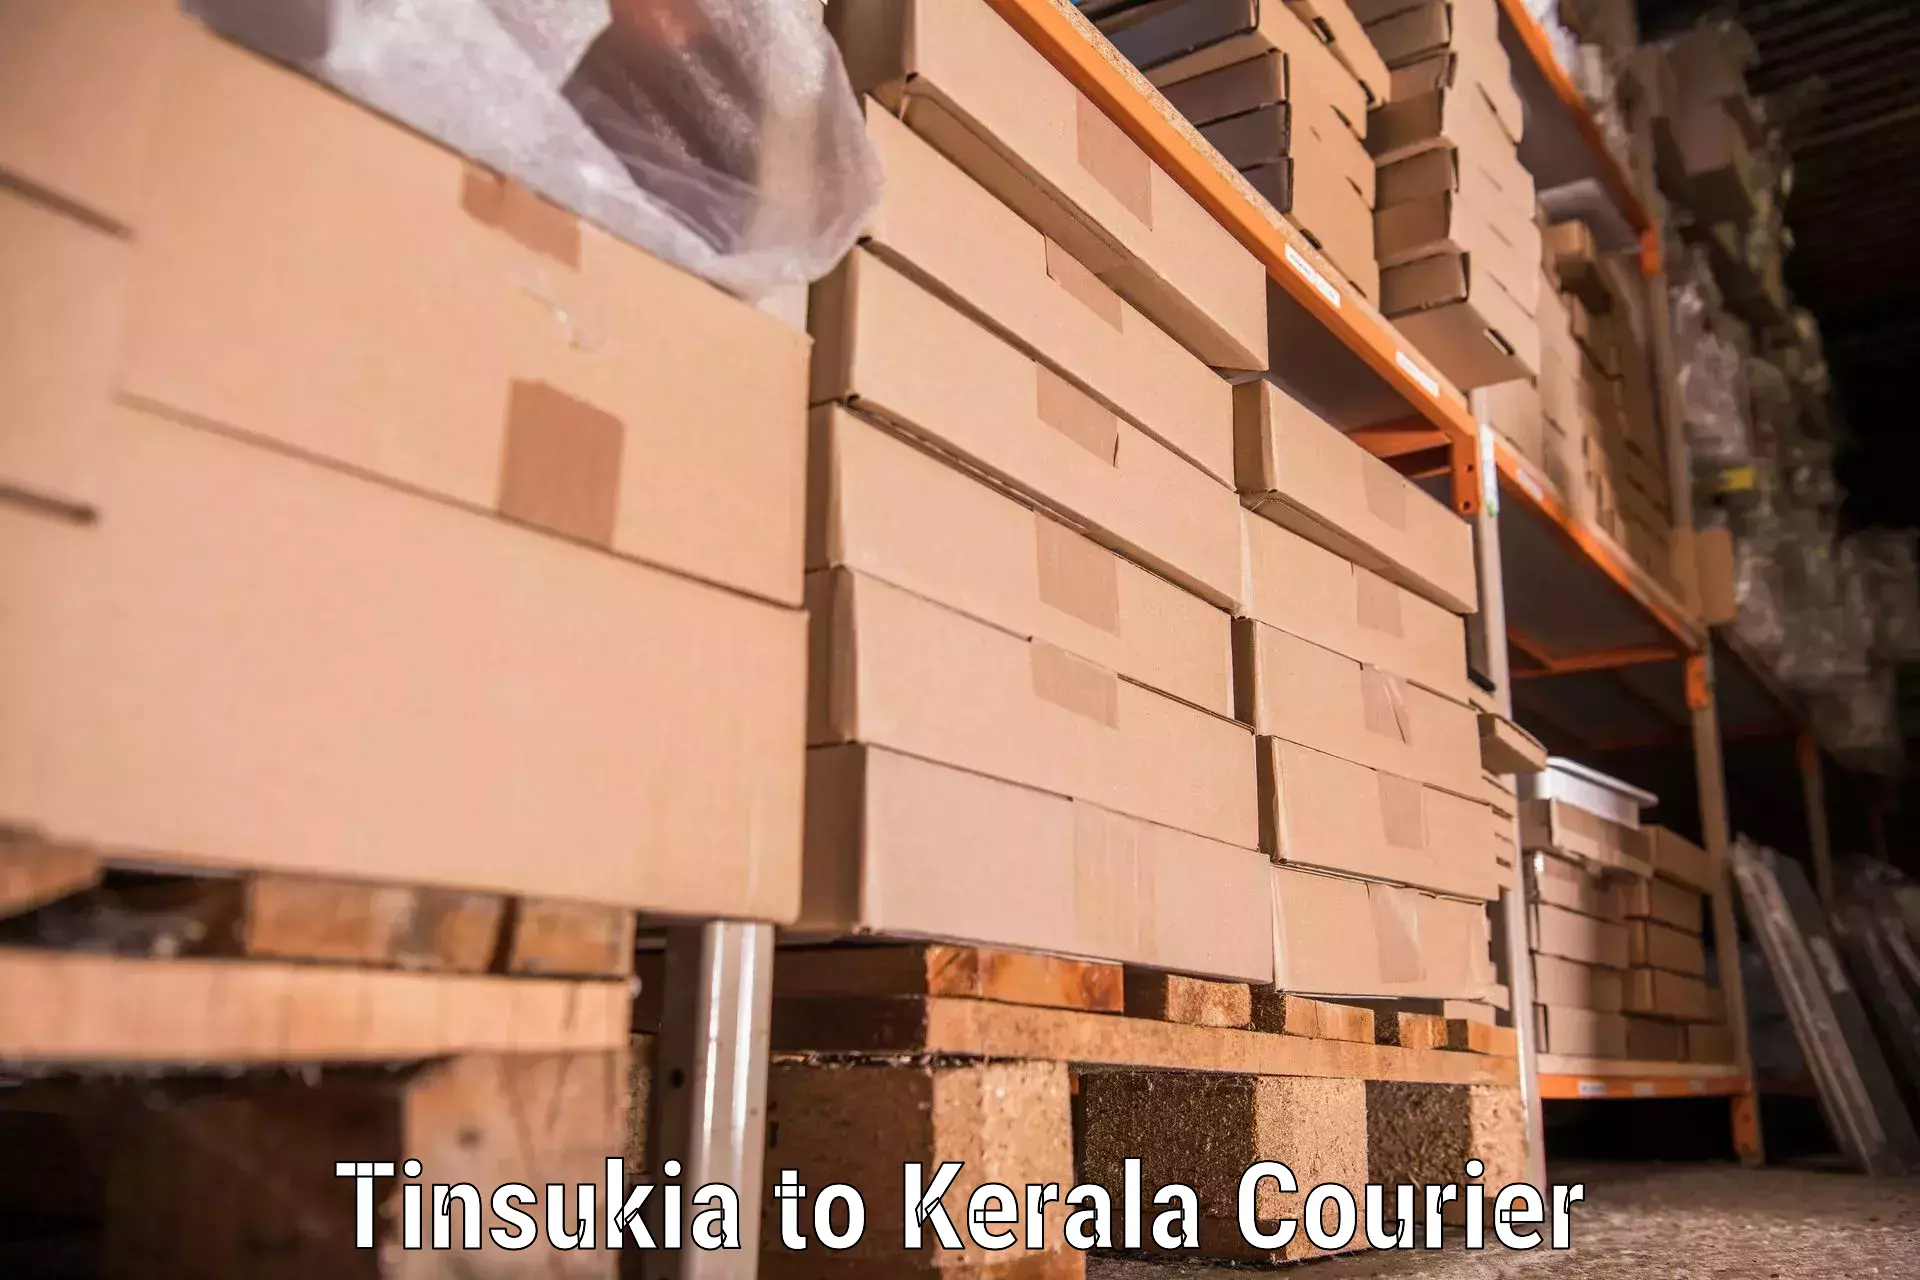 Professional relocation services Tinsukia to Kuthiathode